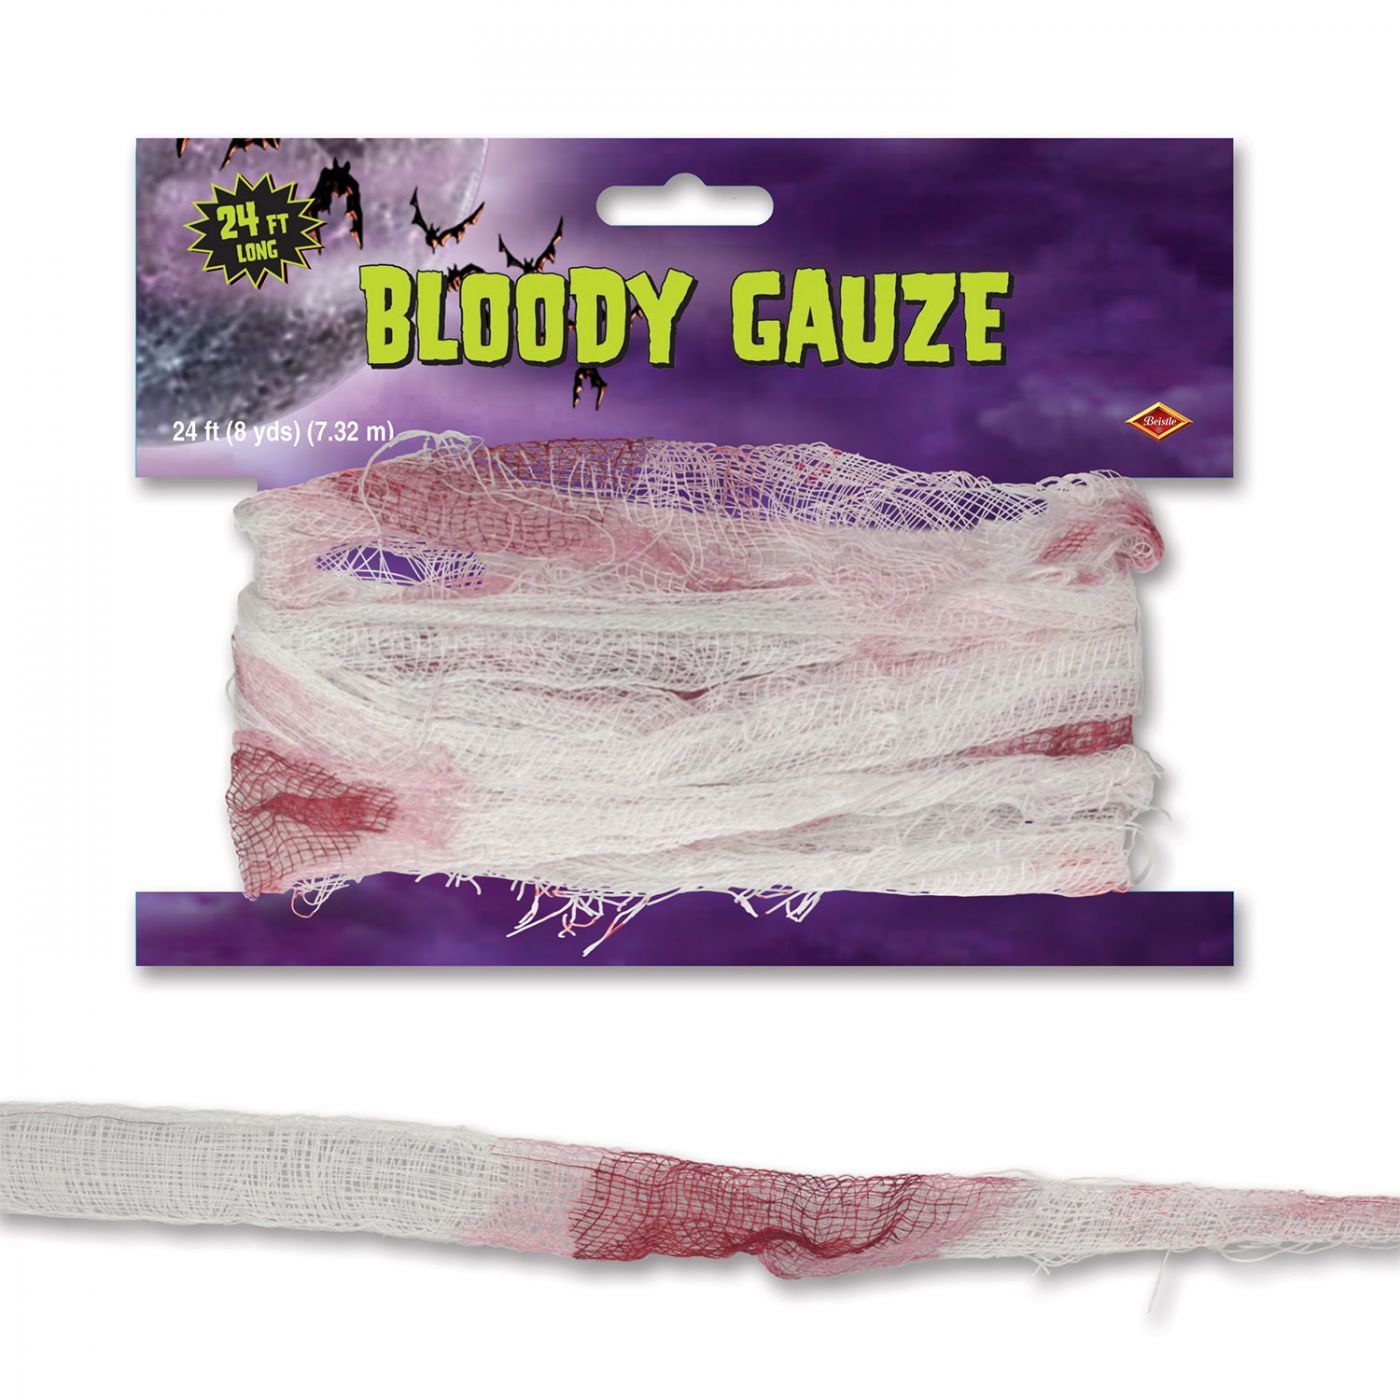 Bloody Gauze image